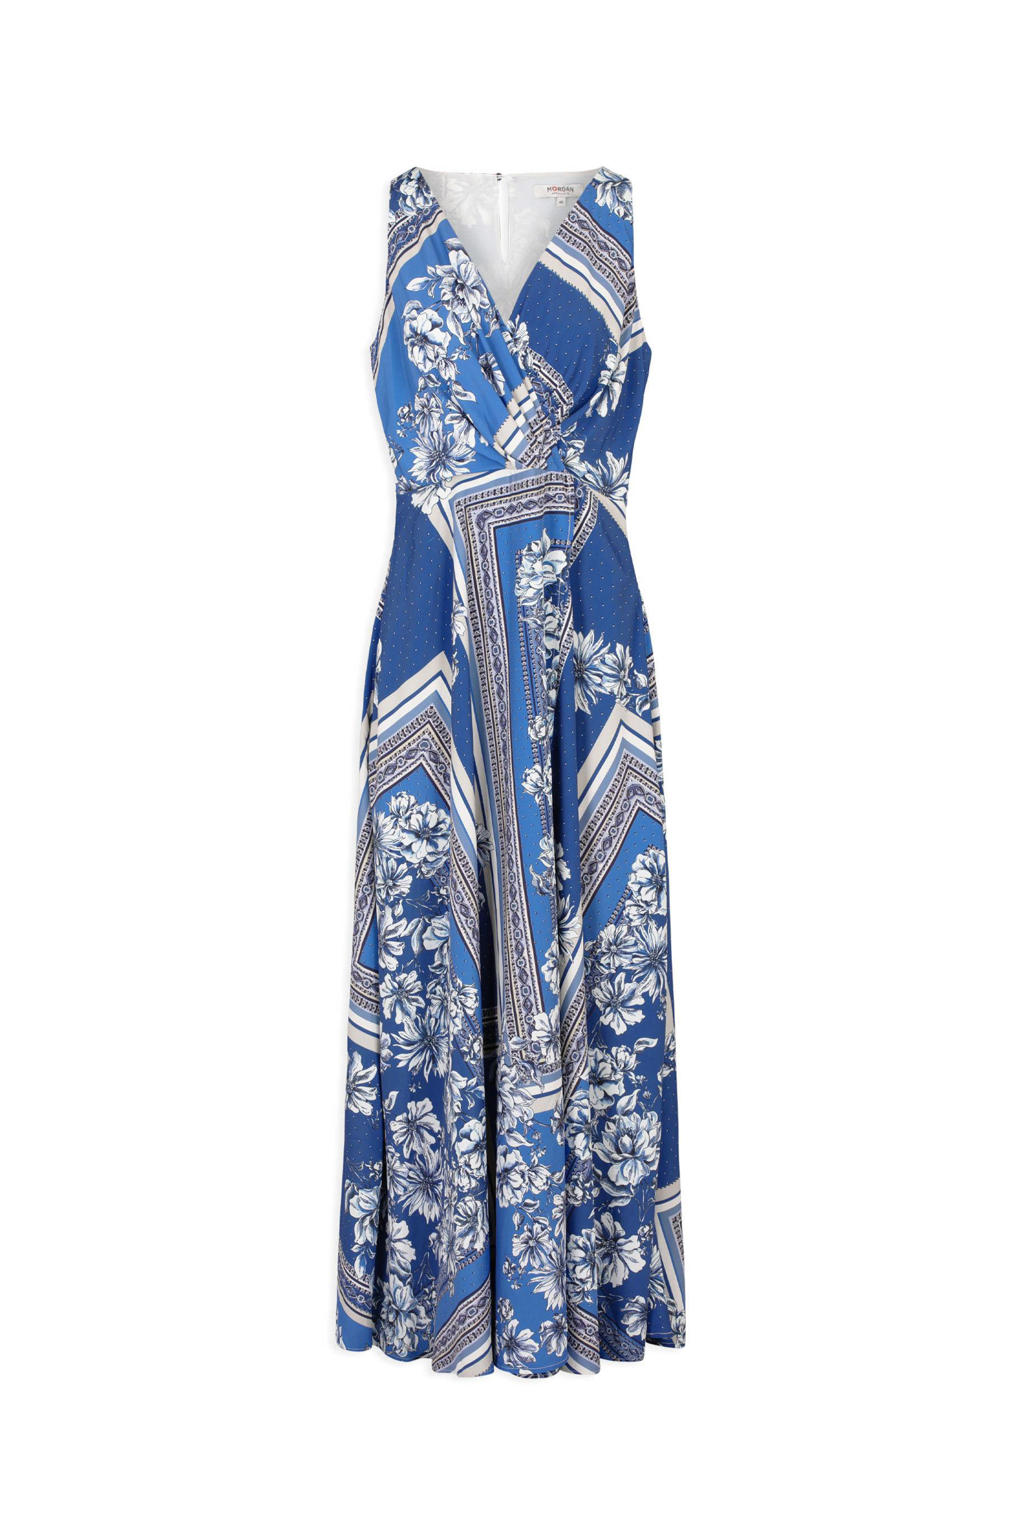 Morgan gebloemde maxi A-lijn jurk blauw/wit